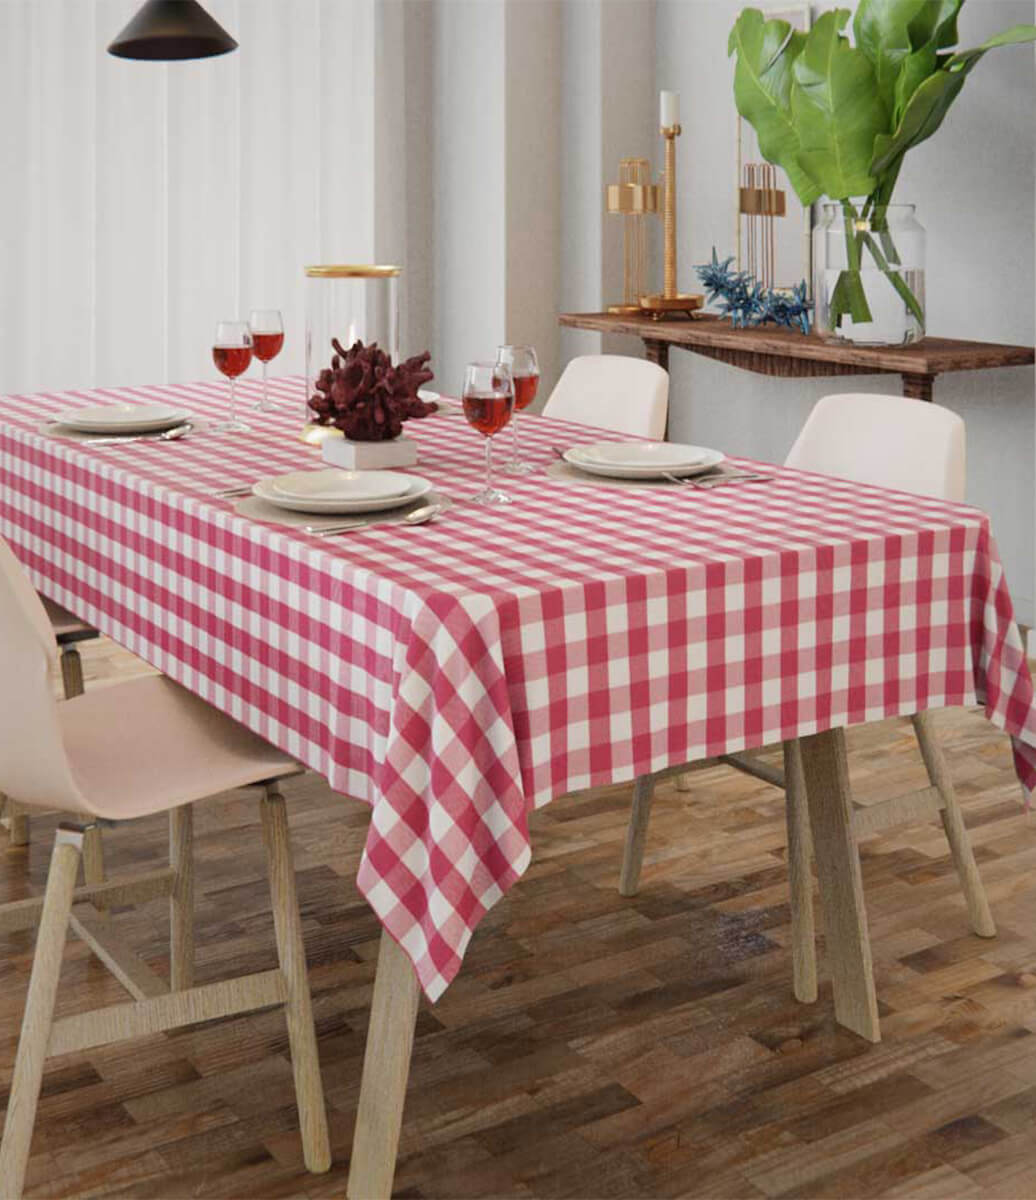 decoração com toalha de mesa rosa xadrez sousplat e louças brancas